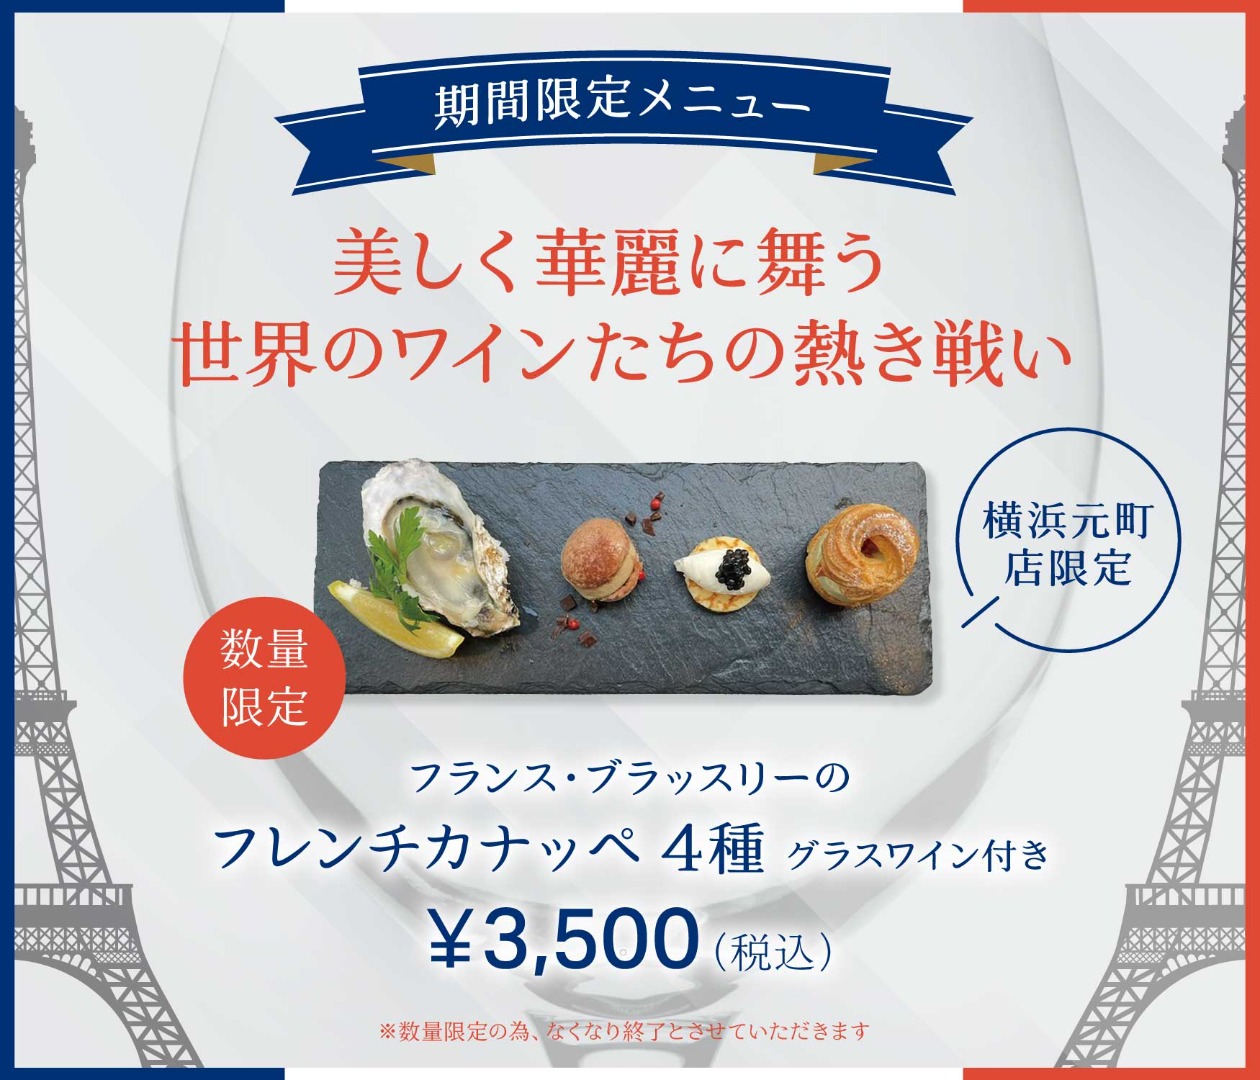 240726_Olympic-menu_yokohama_1750x1500